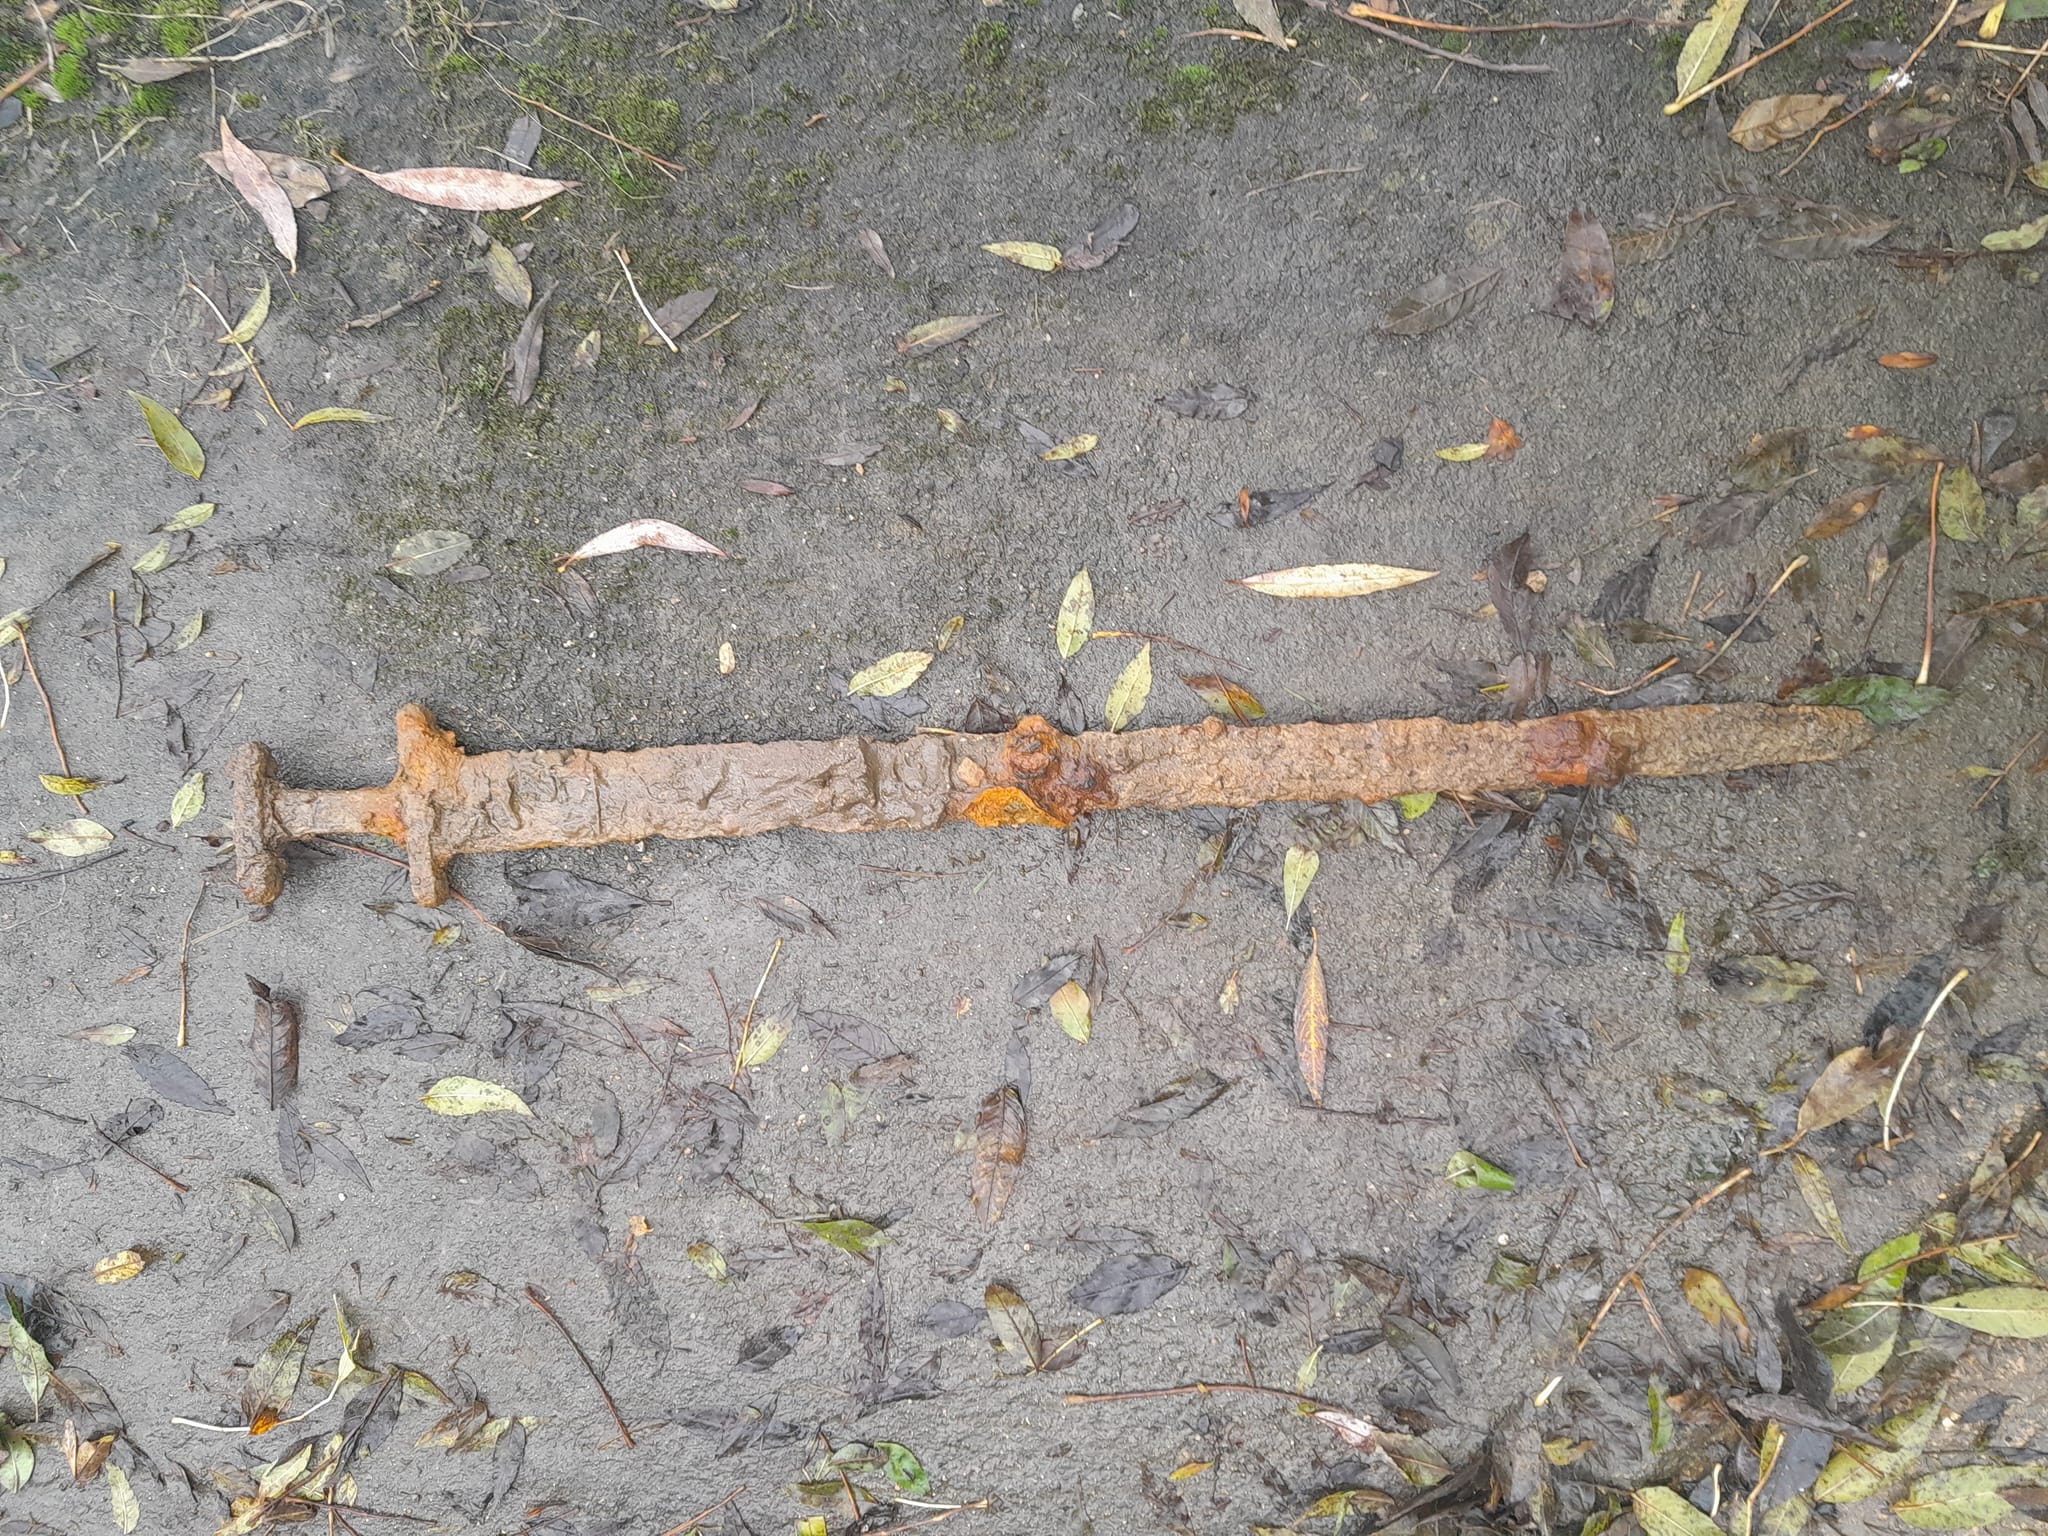 A rusty sword